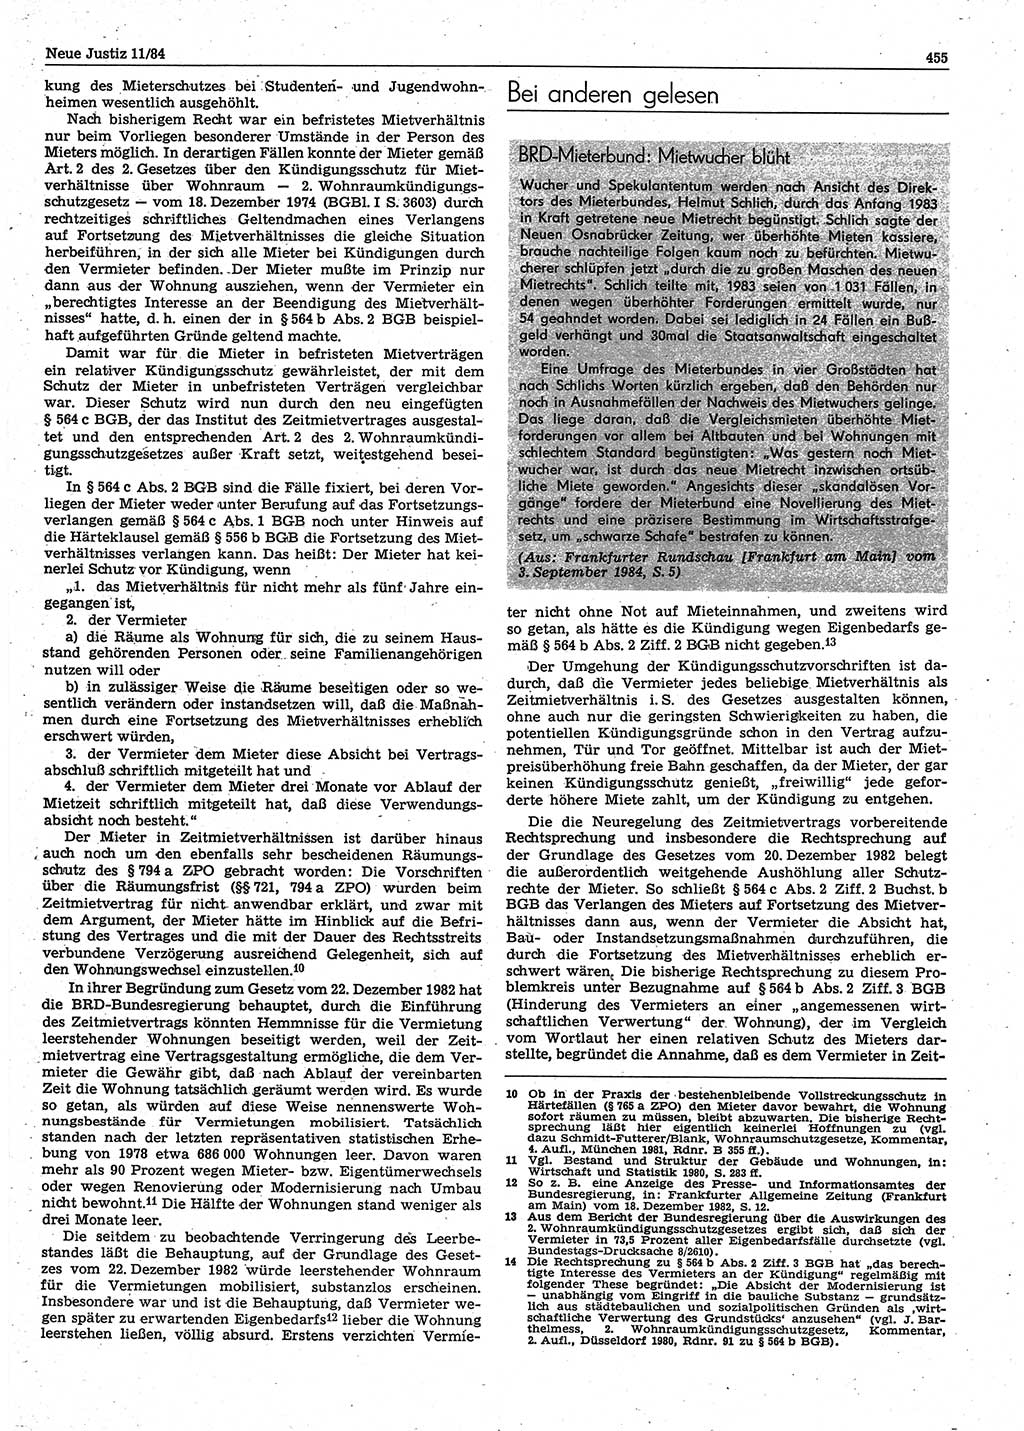 Neue Justiz (NJ), Zeitschrift für sozialistisches Recht und Gesetzlichkeit [Deutsche Demokratische Republik (DDR)], 38. Jahrgang 1984, Seite 455 (NJ DDR 1984, S. 455)